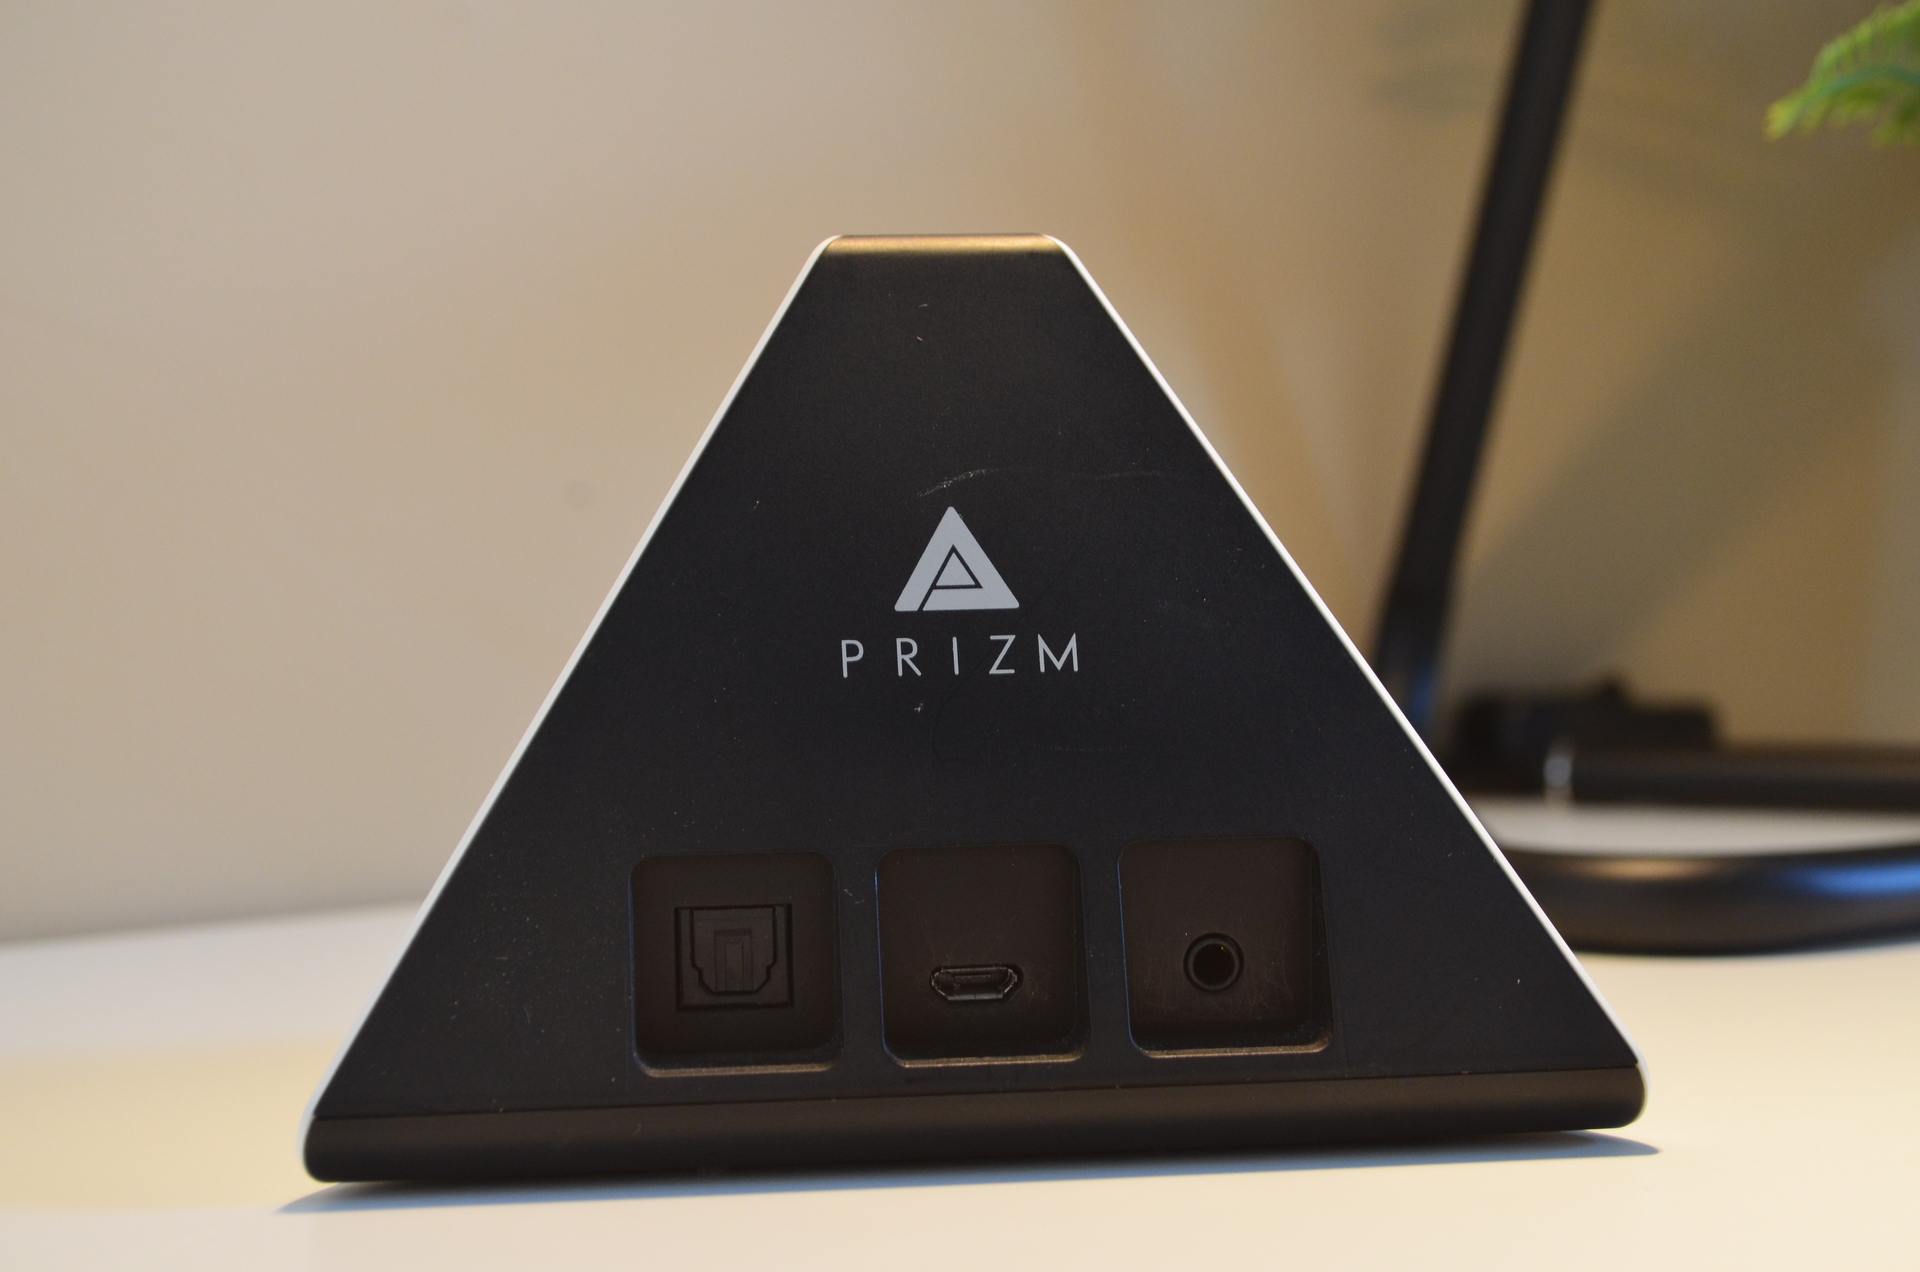 Prizm DSC 1721 TEST – Prizm : Le guide musicale 2.0 à avoir dans son domicile ! assistant virtuel